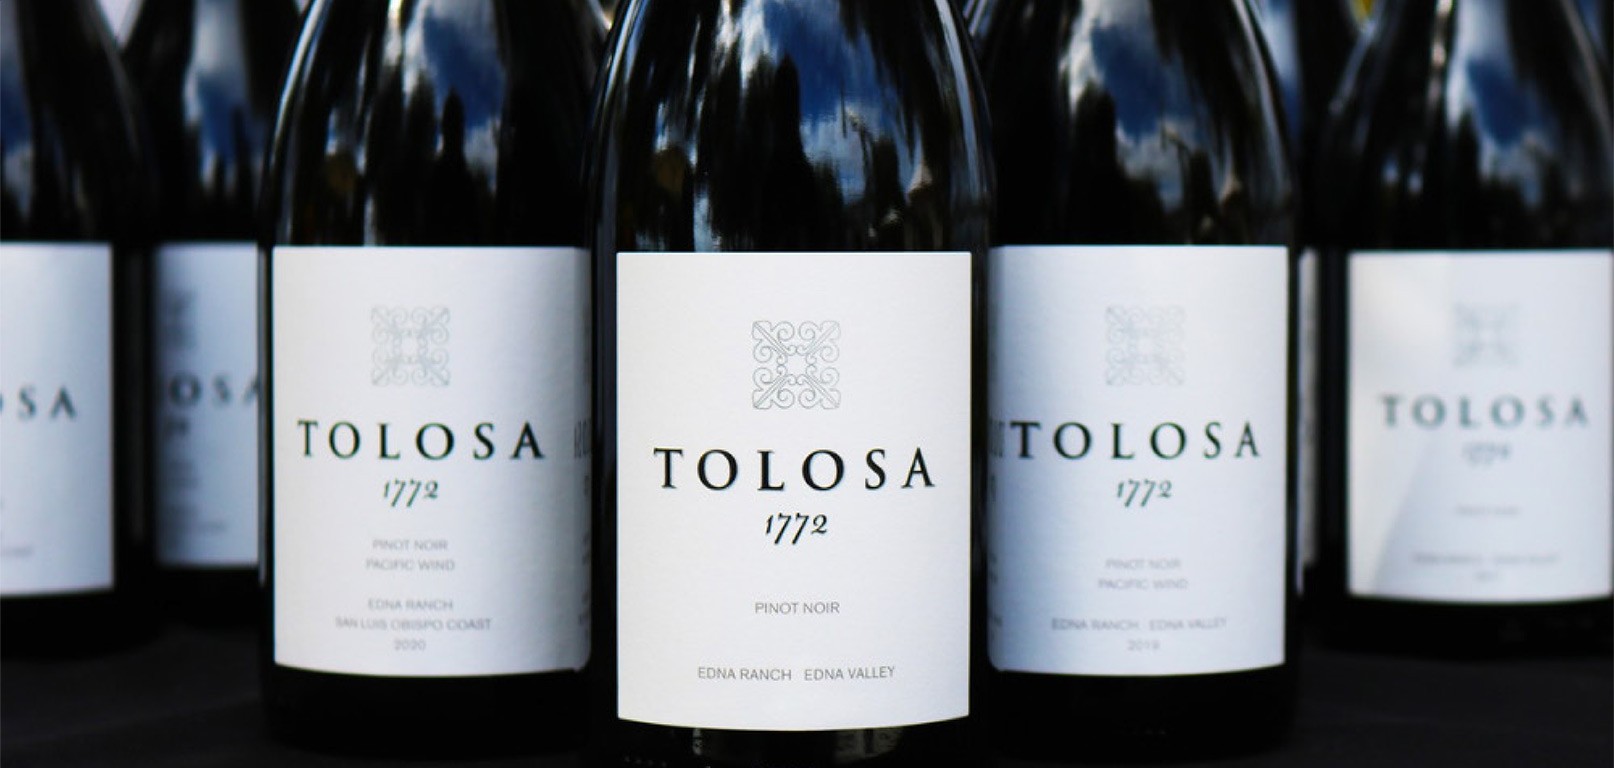 Image of Tolosa wine bottles